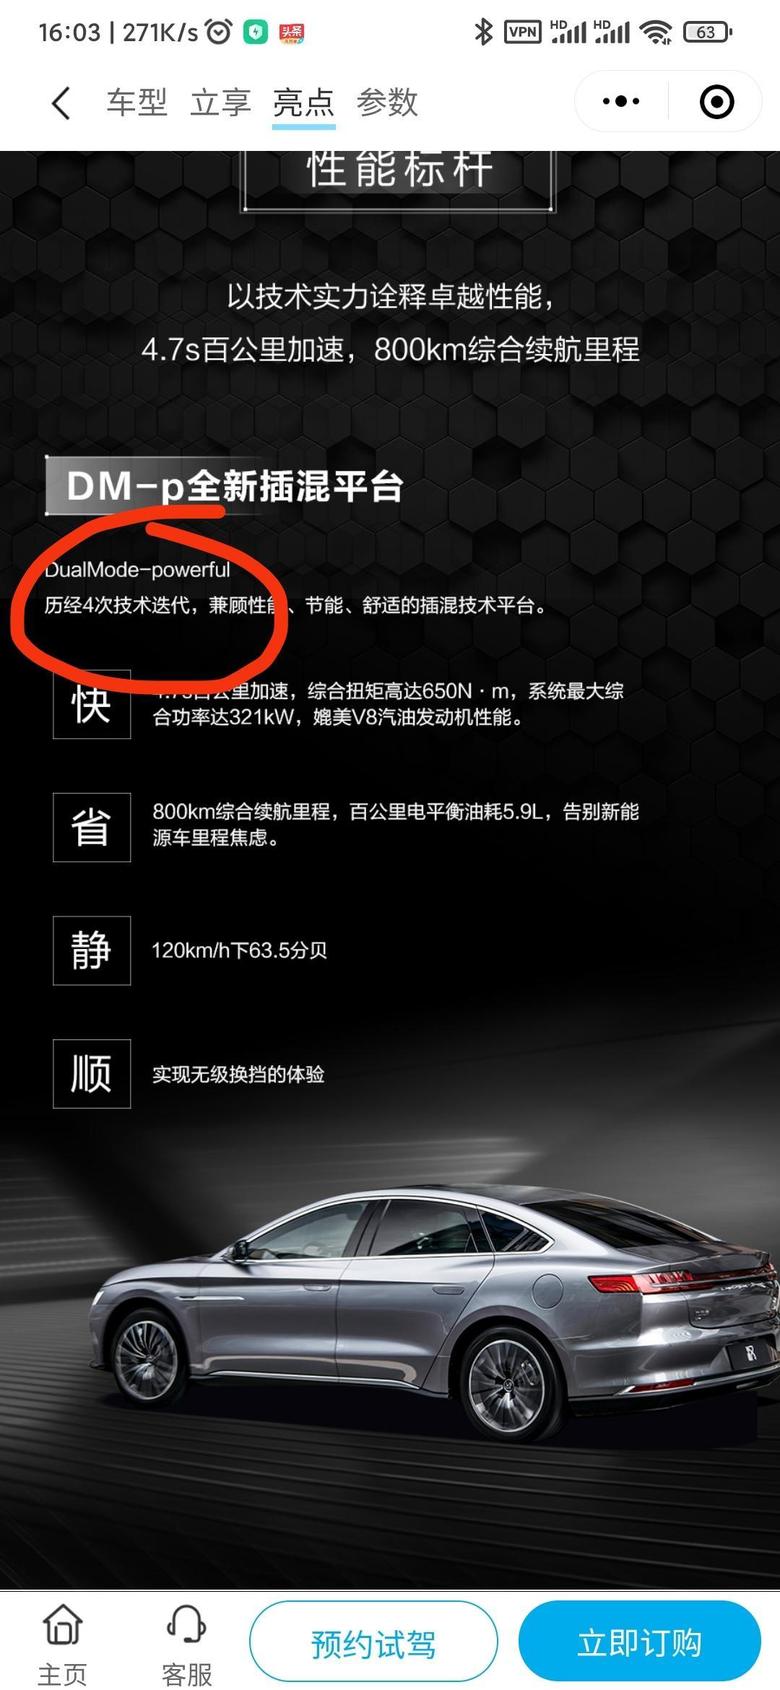 请问目前(2021.10)汉DM是跟dmi同样的第四代的dmp？不是说跟dmi同代的dmp还没发布吗？汉dmi都还没有，怎么就出来了dmp了有点乱，想买汉DM，求解答，谢谢图是比亚迪小程序上汉DM车型介绍